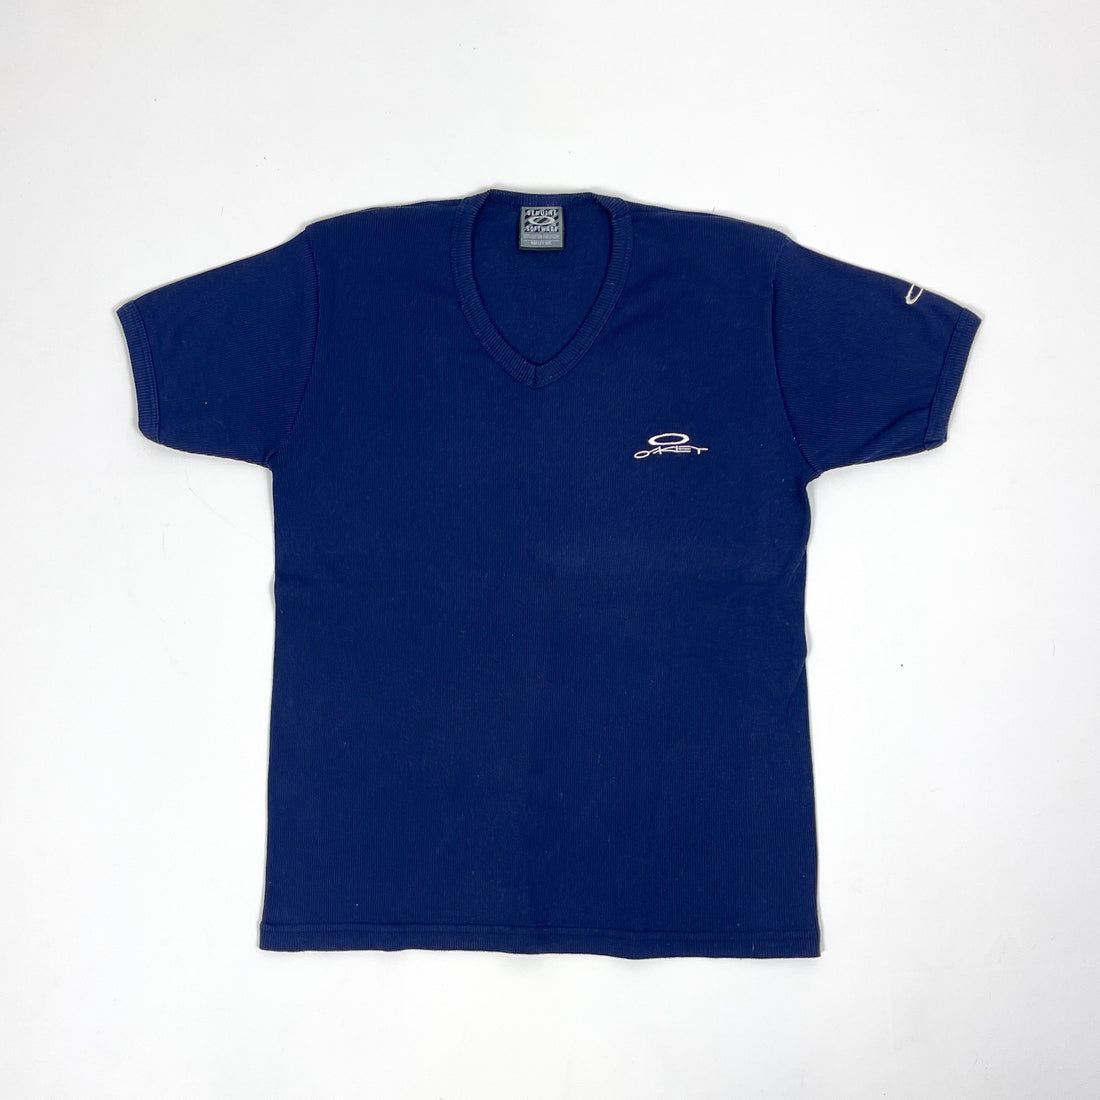 Oakley Software Blue Short Sleeve Shirt 1990's